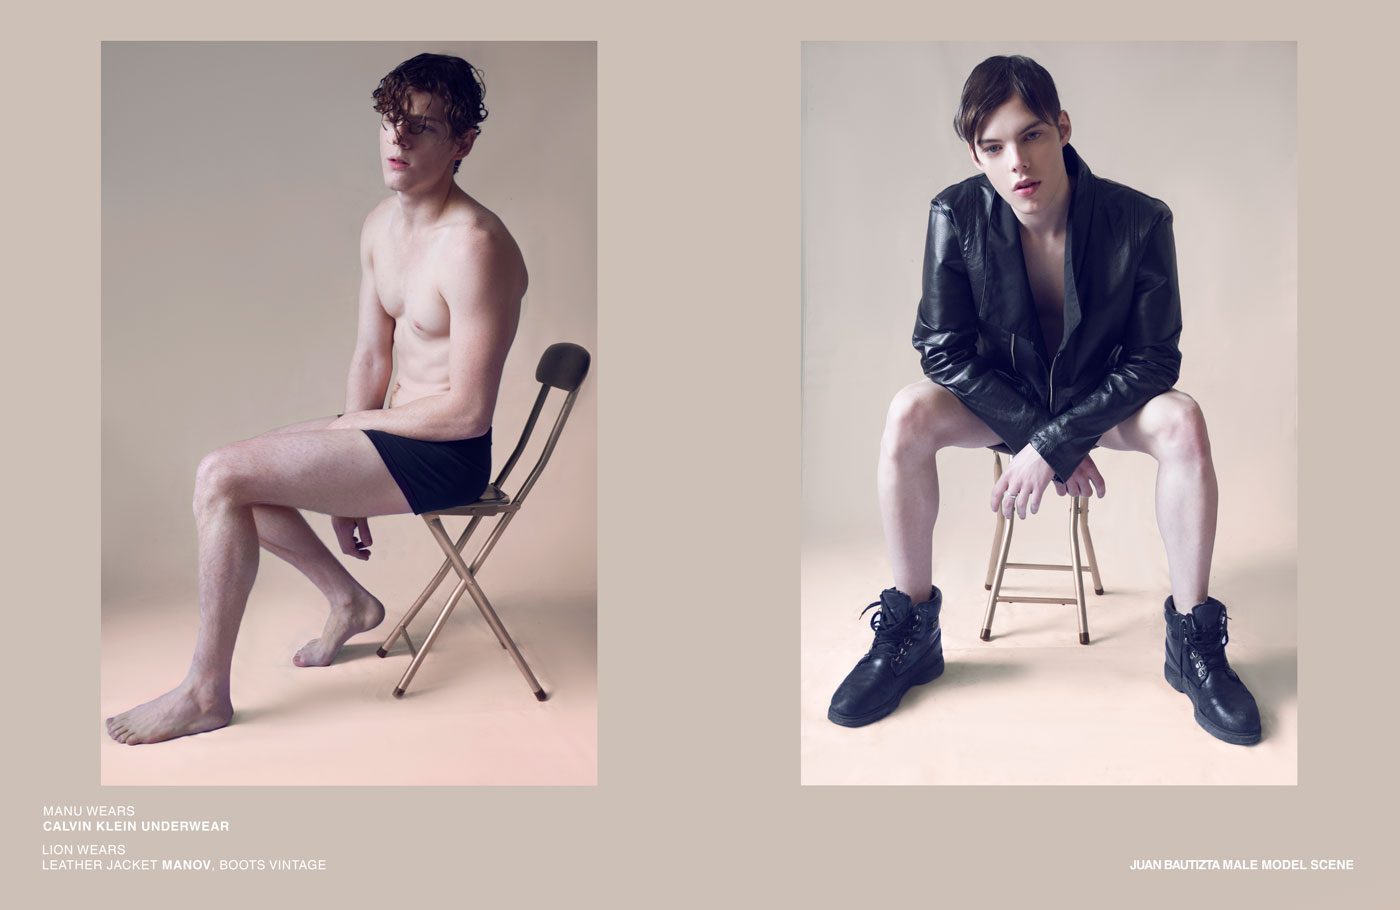 Find more male model scene editorials.